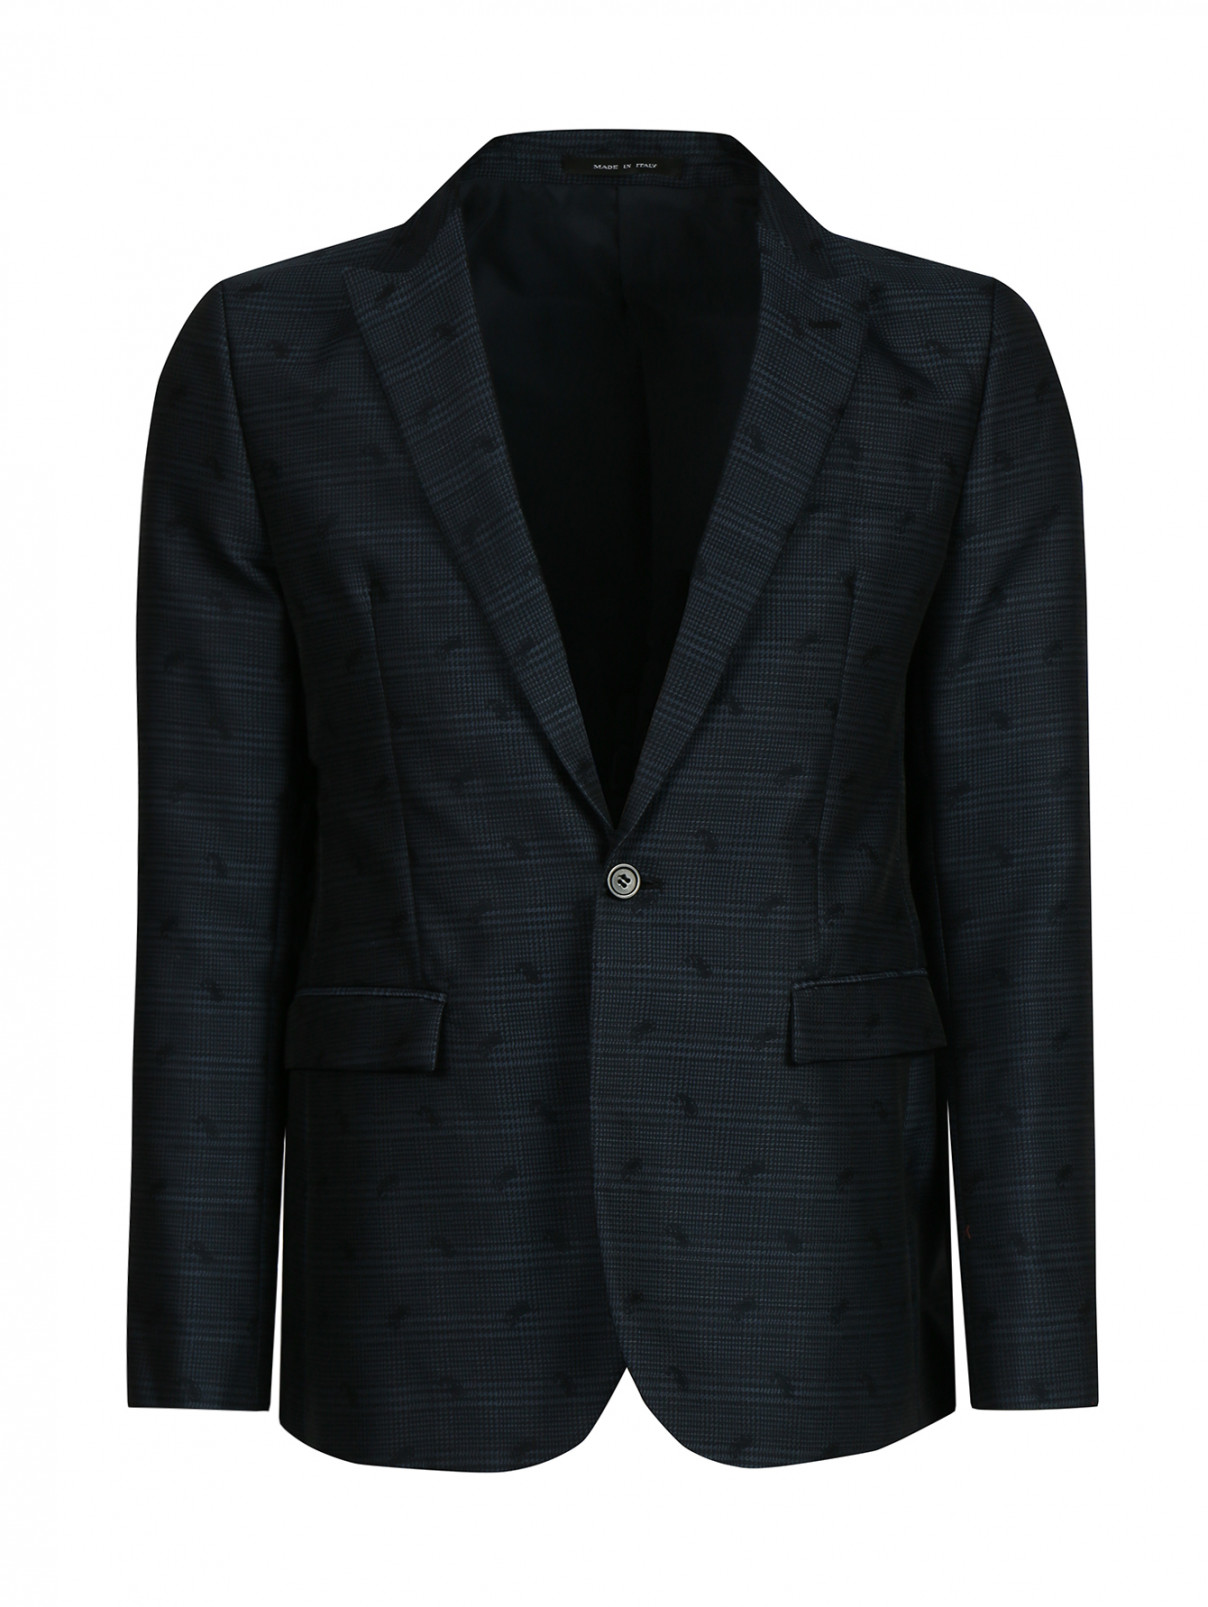 Пиджак из хлопка и шерсти с узором Emporio Armani  –  Общий вид  – Цвет:  Синий